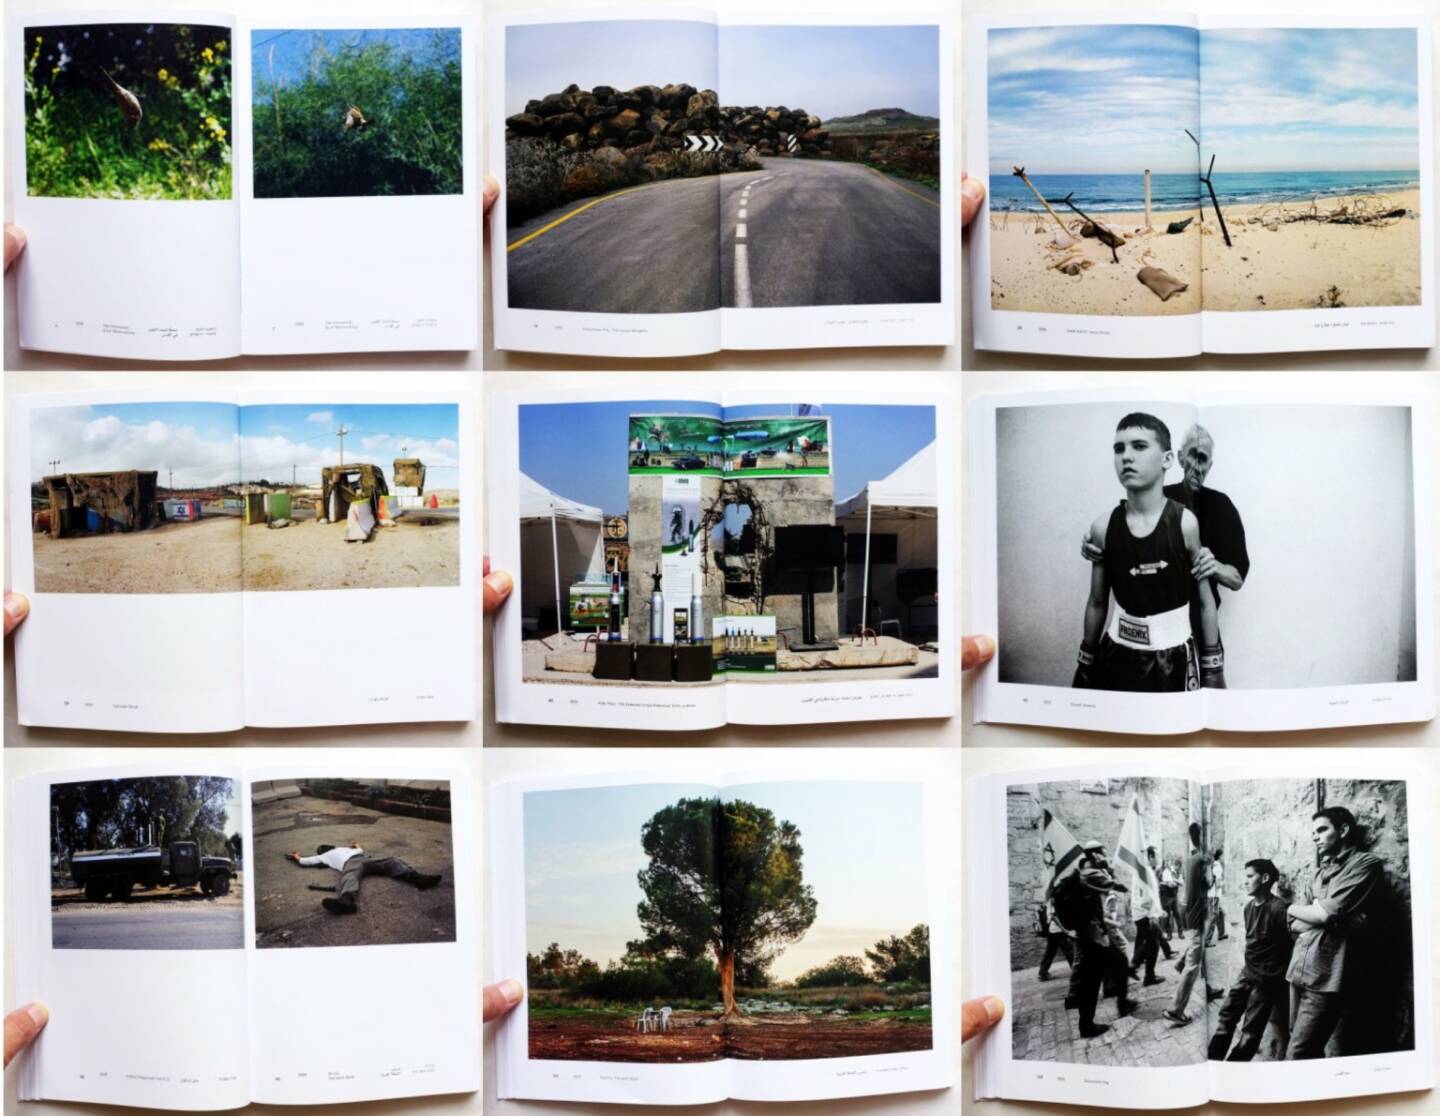 Noa Ben-Shalom - Hush, Israel Palestine 2000-2014, Sternthal Books 2015, Beispielseiten, sample spreads - http://josefchladek.com/book/noa_ben-shalom_-_hush_israel_palestine_2000-2014